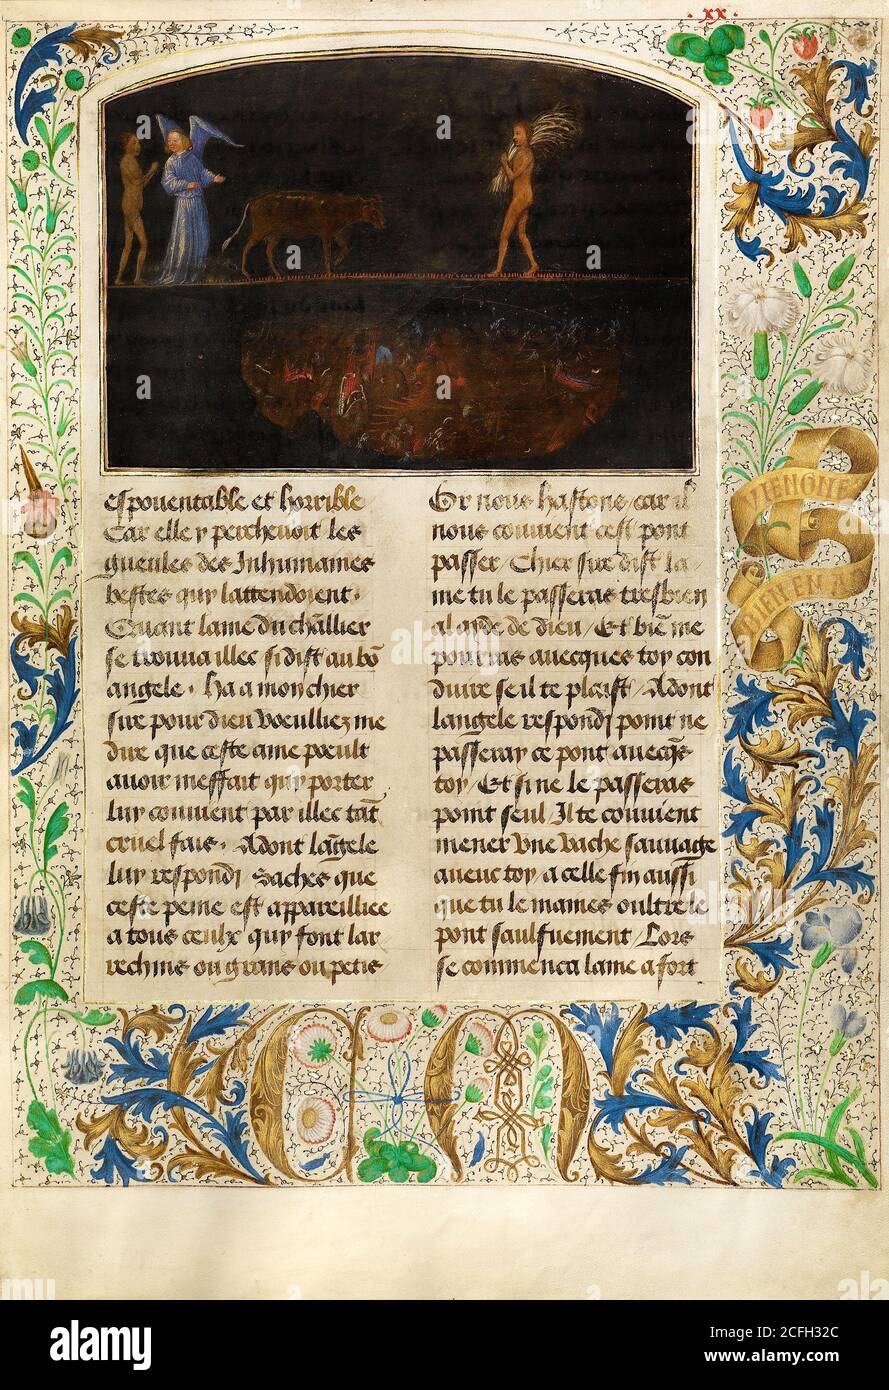 Simon Marmion, il tormento dei fieri - Valle di Burning Sulphur 1475 Tempera, oro, inchiostro su pergamena, il J. Paul Getty Museum, Los Angeles, USA. Foto Stock